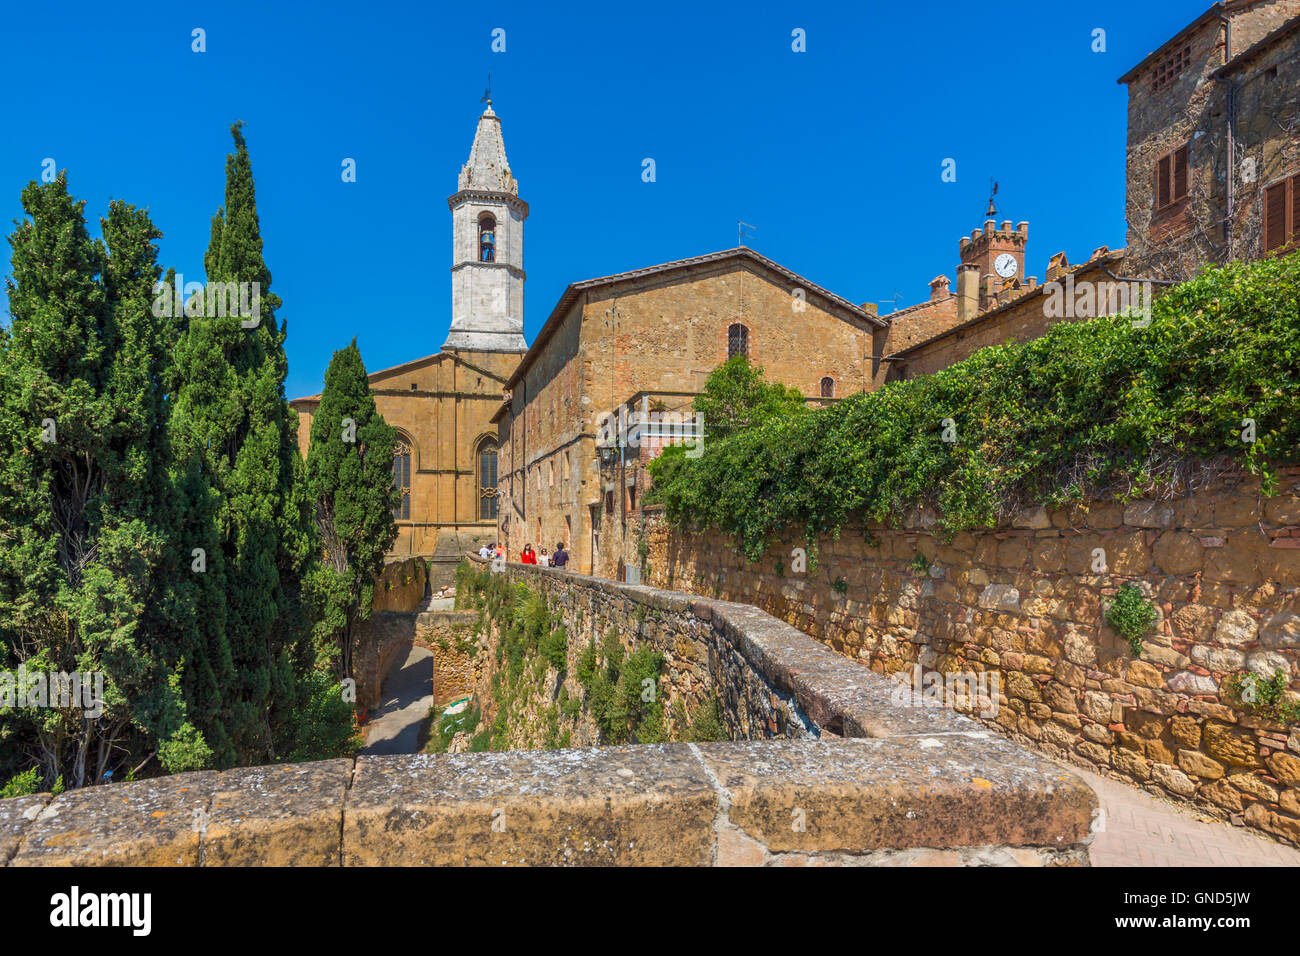 Pienza, provincia de Siena, Toscana, Italia. Vista desde el paseo a lo largo de las murallas de la ciudad a la torre de la Cattedrale di Santa Maria Assunta Foto de stock